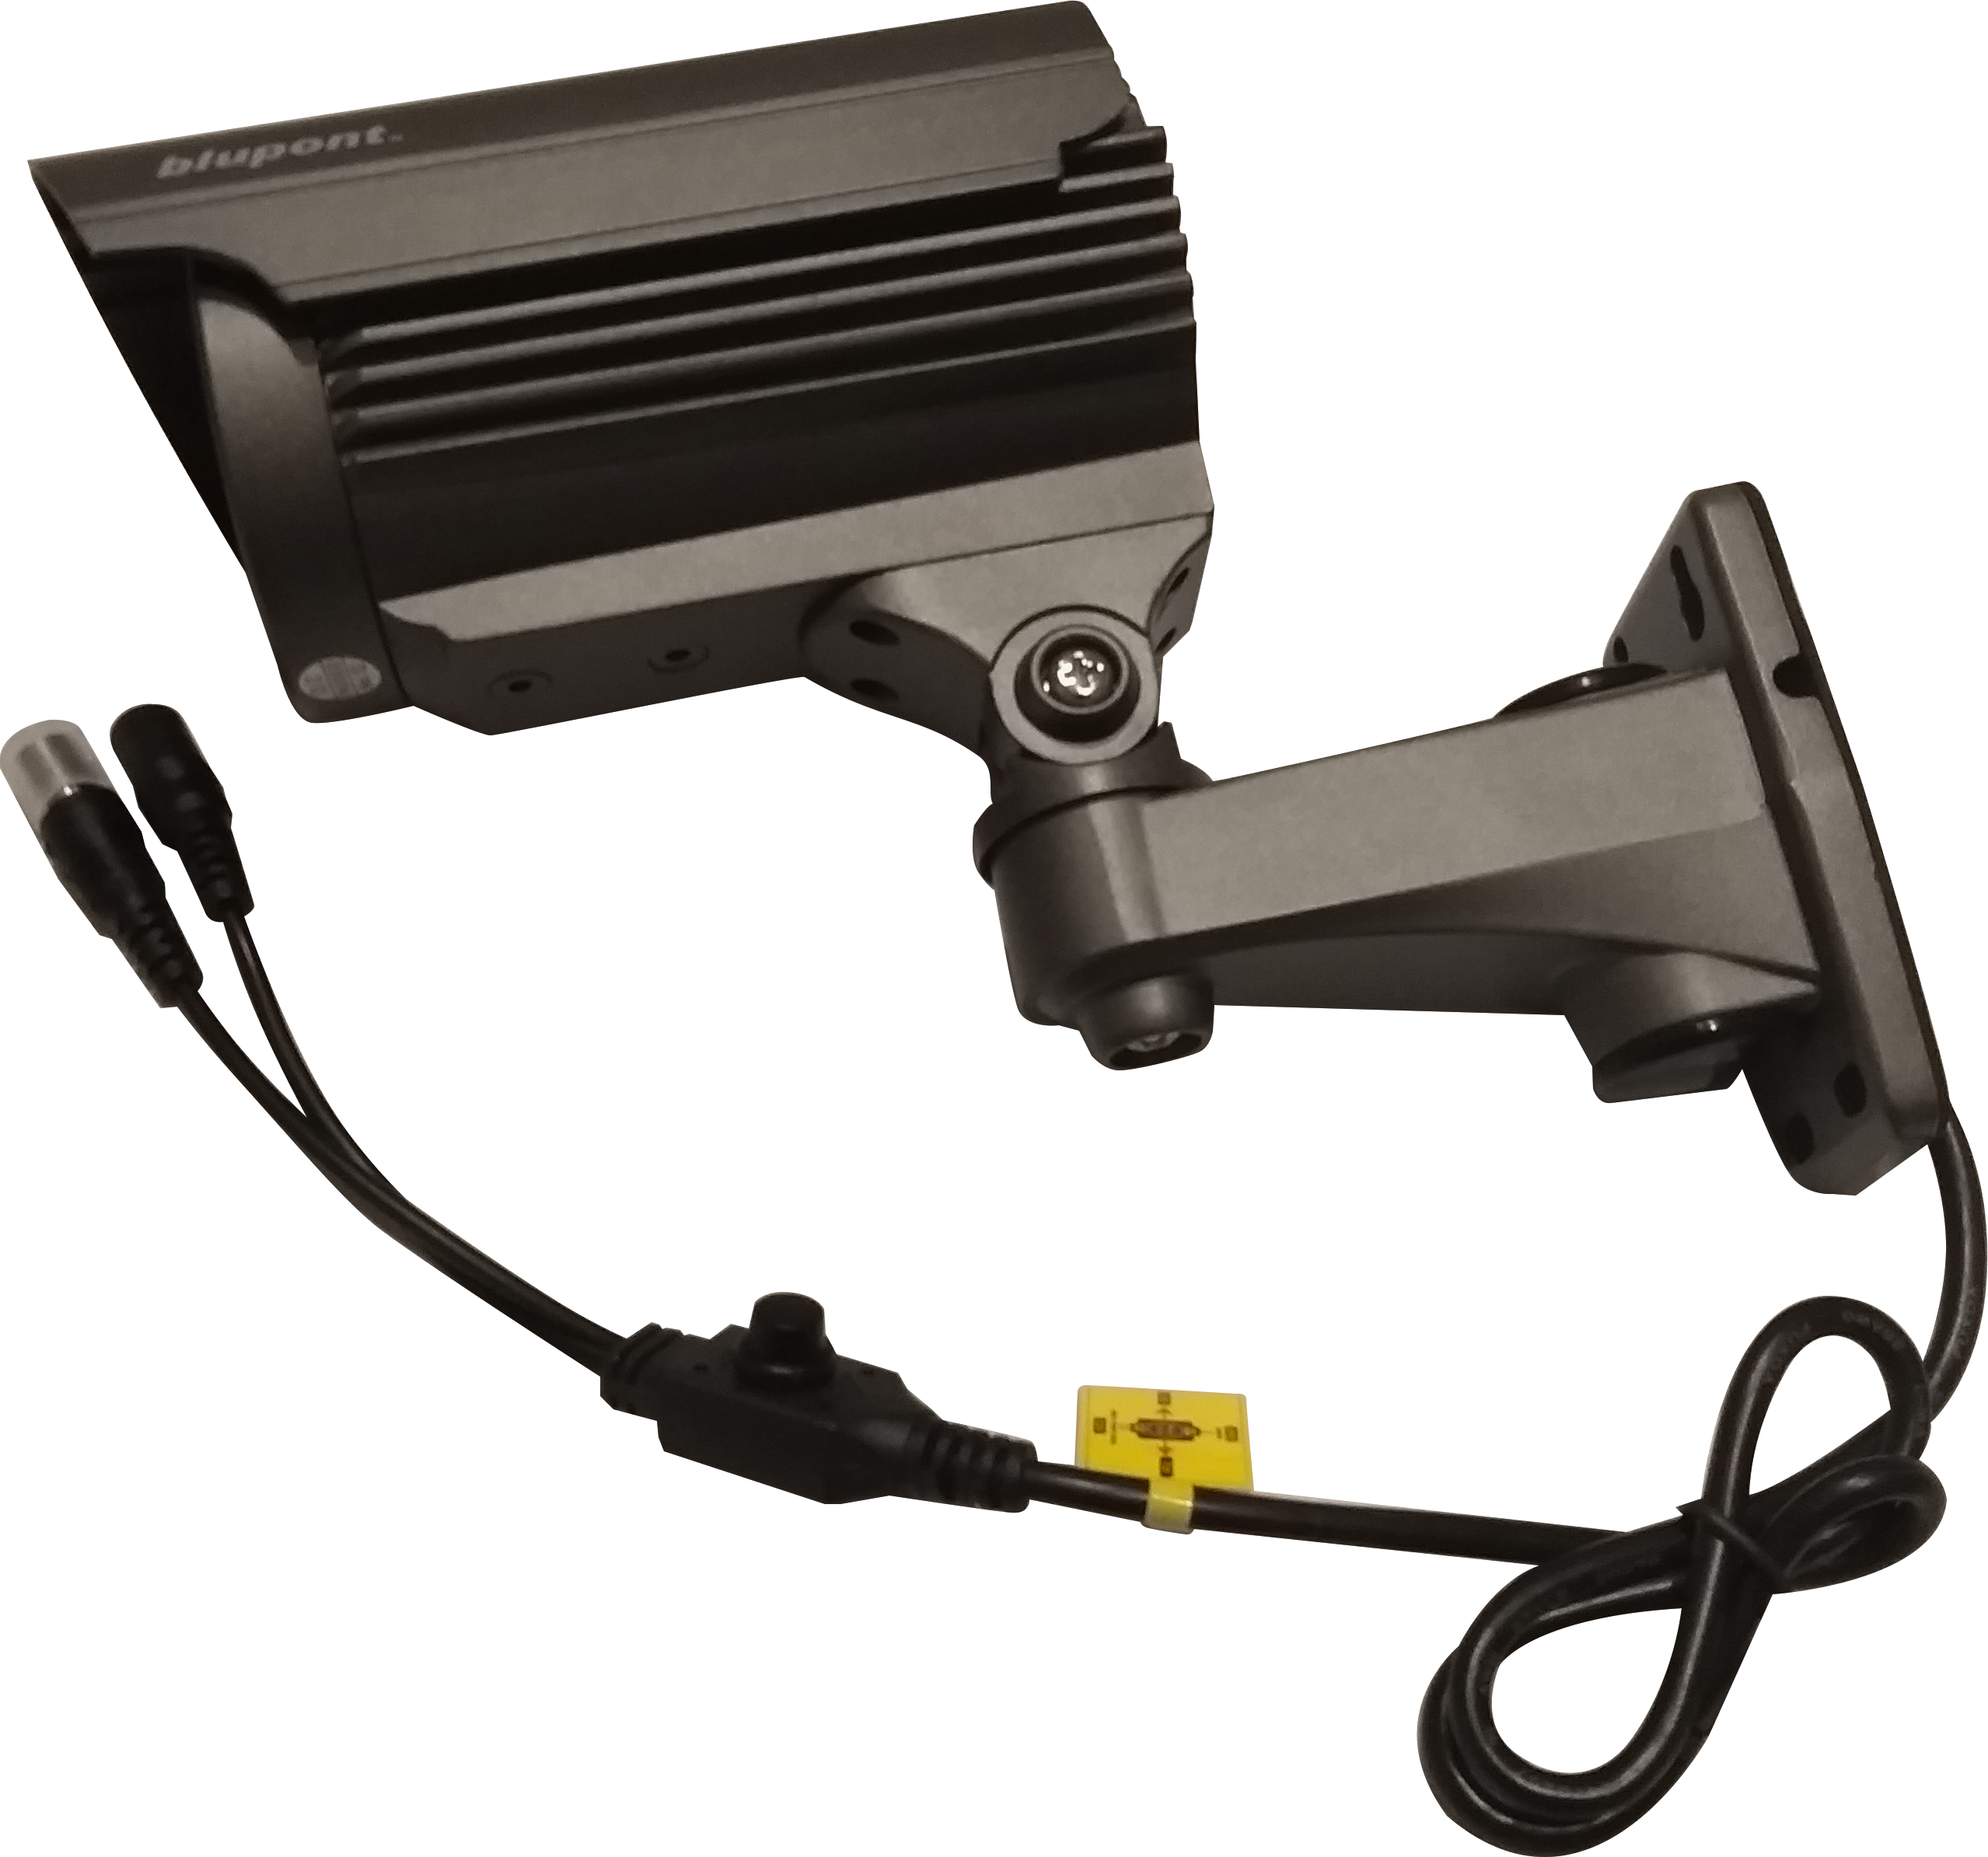 5MP/4MP 4in1 Grey Bullet CCTV Camera - Netbit UK